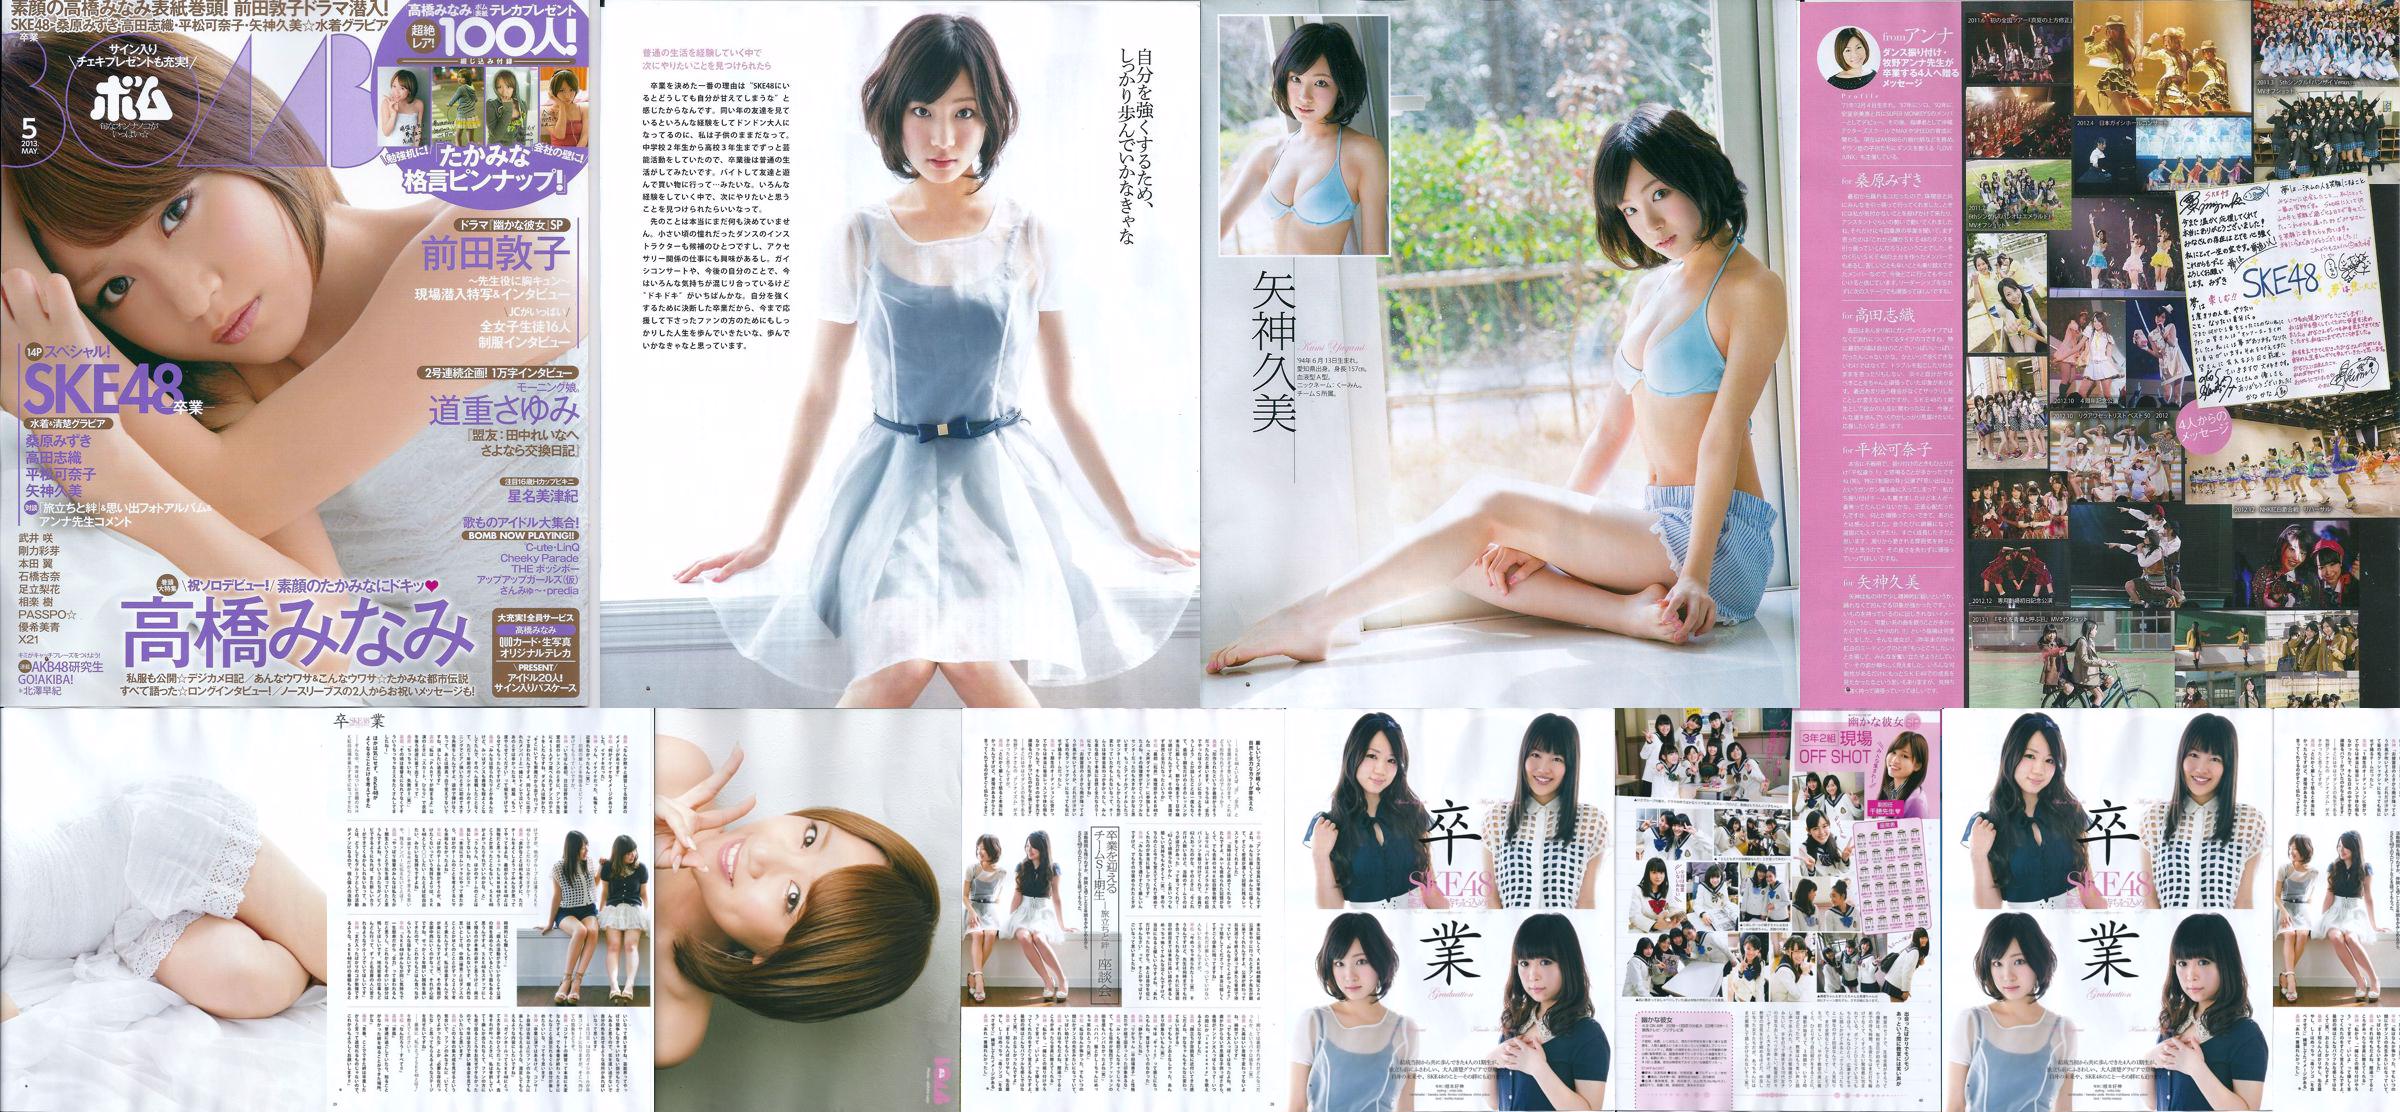 [Bomb Magazine] 2013 No.05 Kumi Yagami Minami Takahashi Atsuko Maeda Foto No.673897 Pagina 6